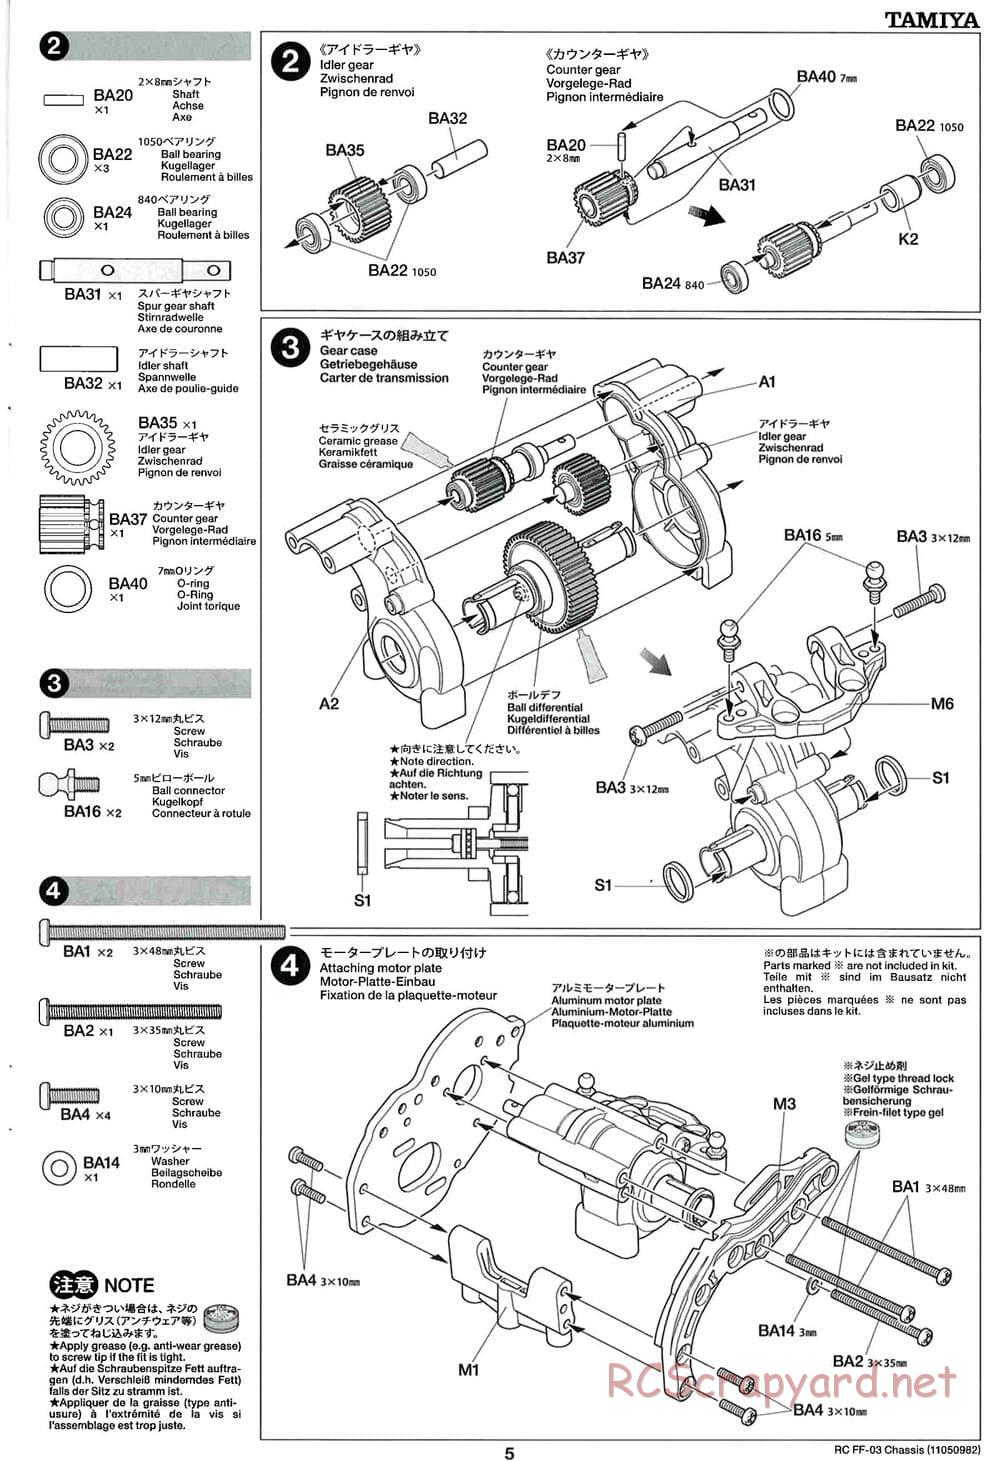 Tamiya - Honda CR-Z - FF-03 Chassis - Manual - Page 5